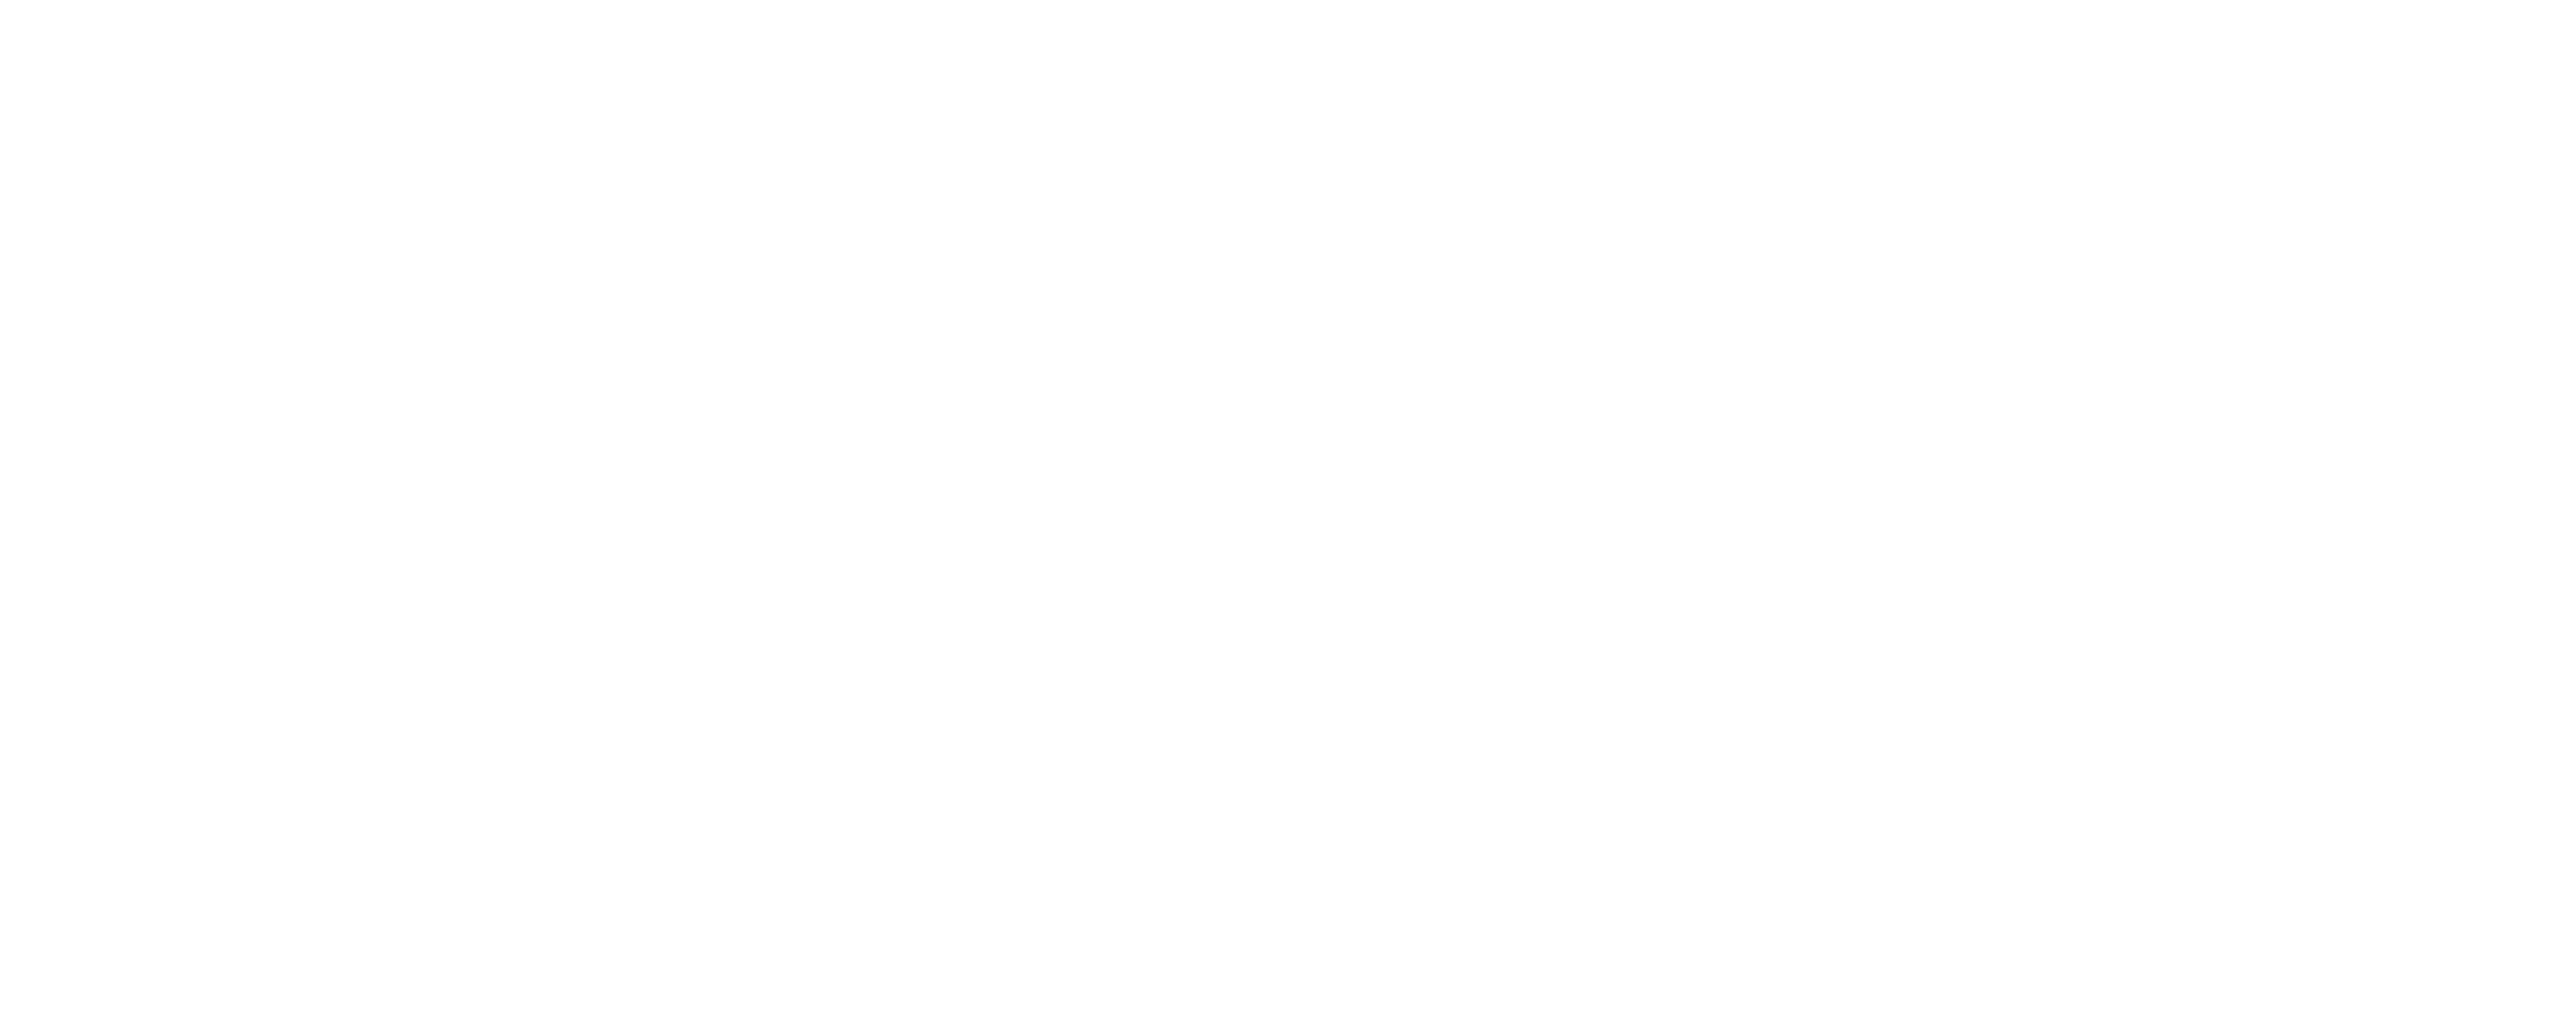 cocomani